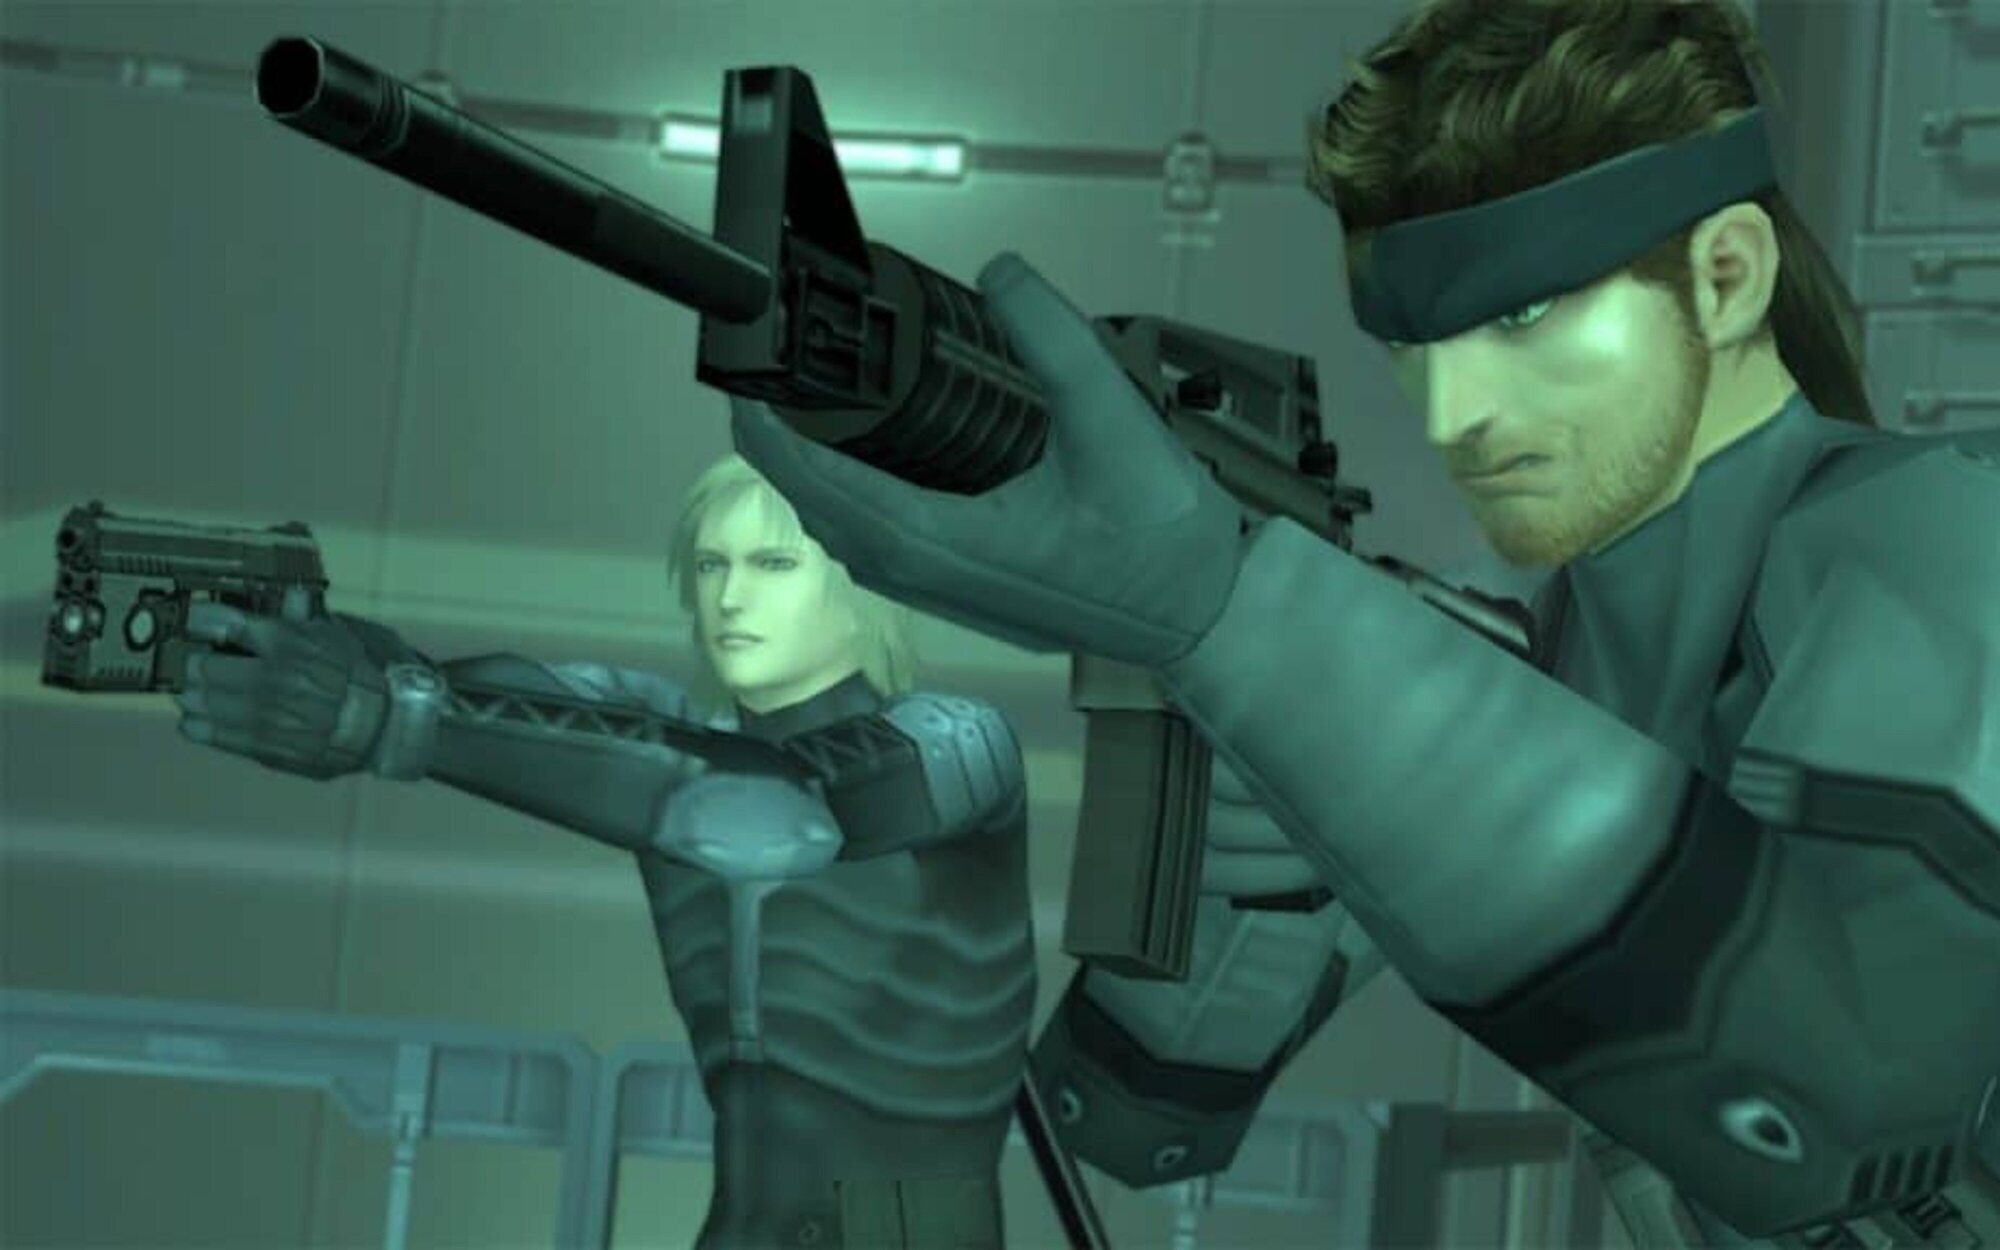 Habrá noticias de 'Metal Gear Solid' en las "próximas semanas", afirma el actor de voz de Raiden